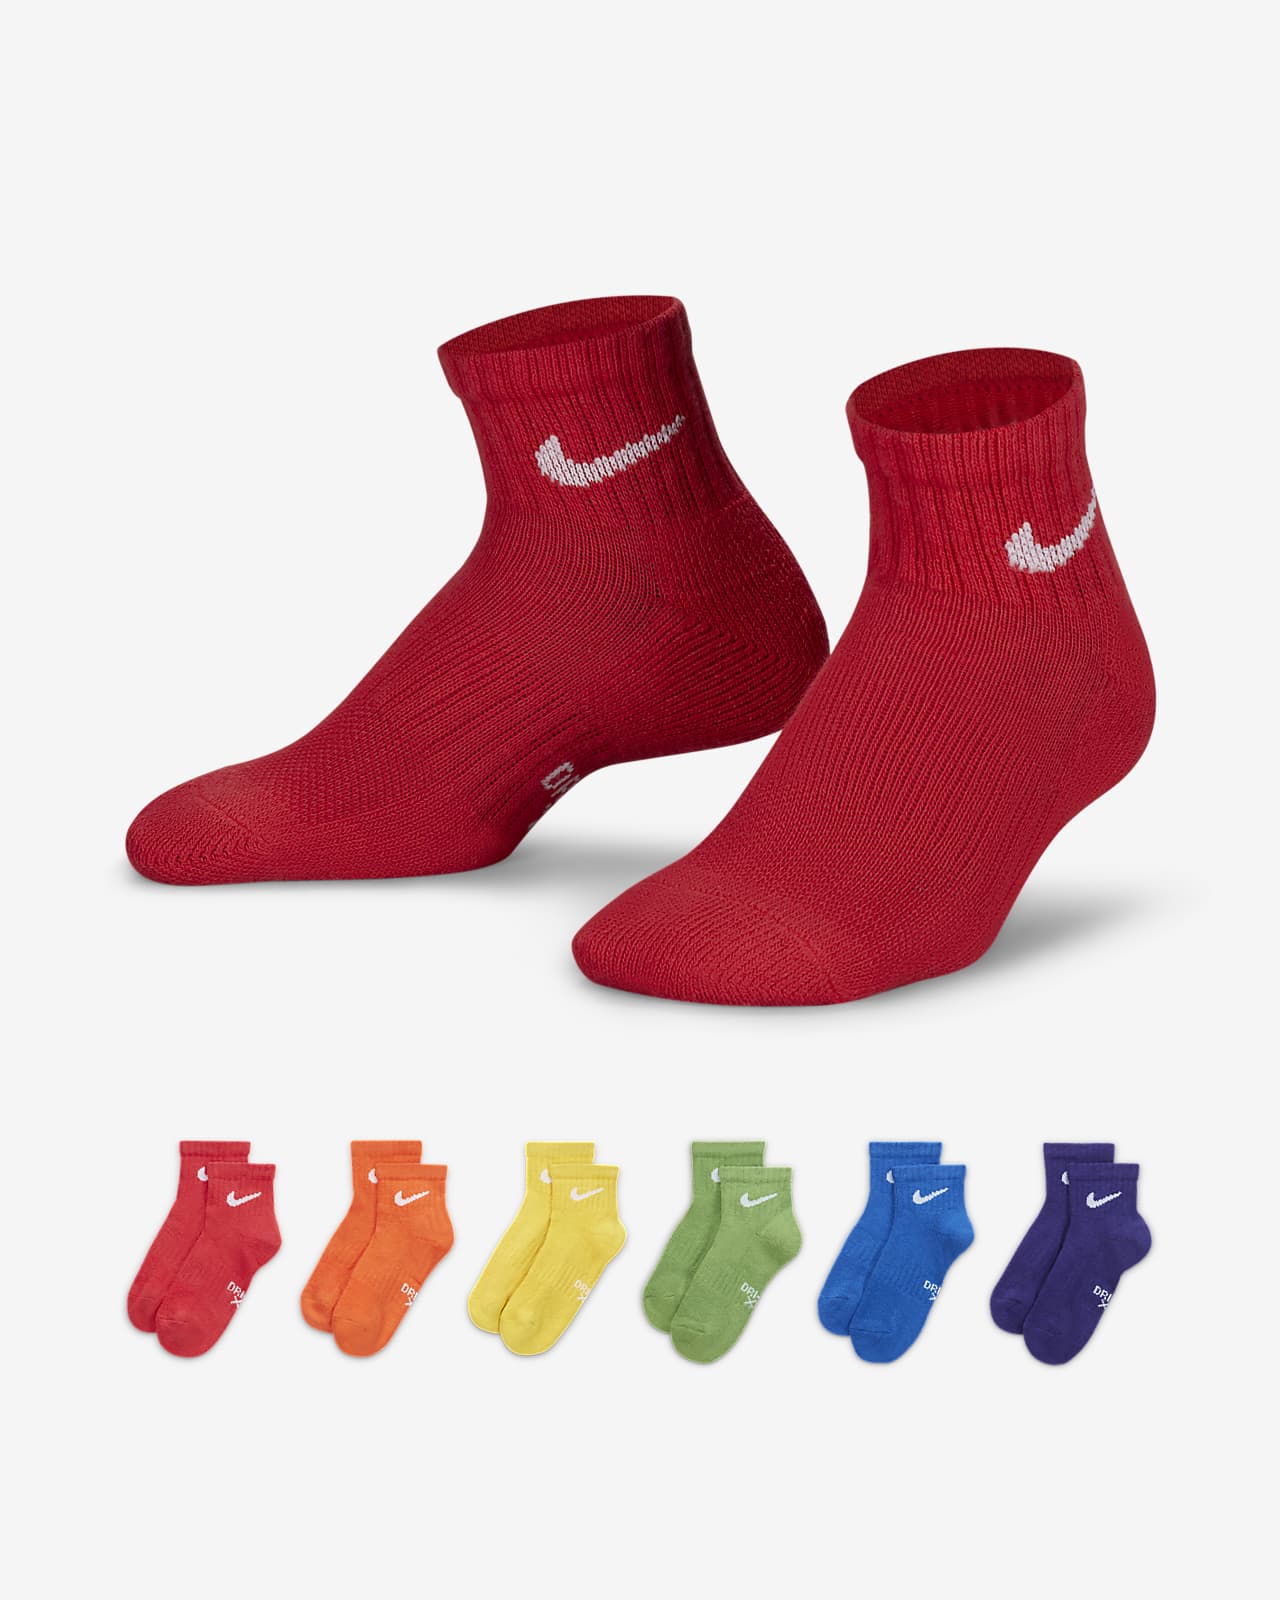 Nike Dri-FIT bokazokni gyerekeknek (6 darabos csomag)